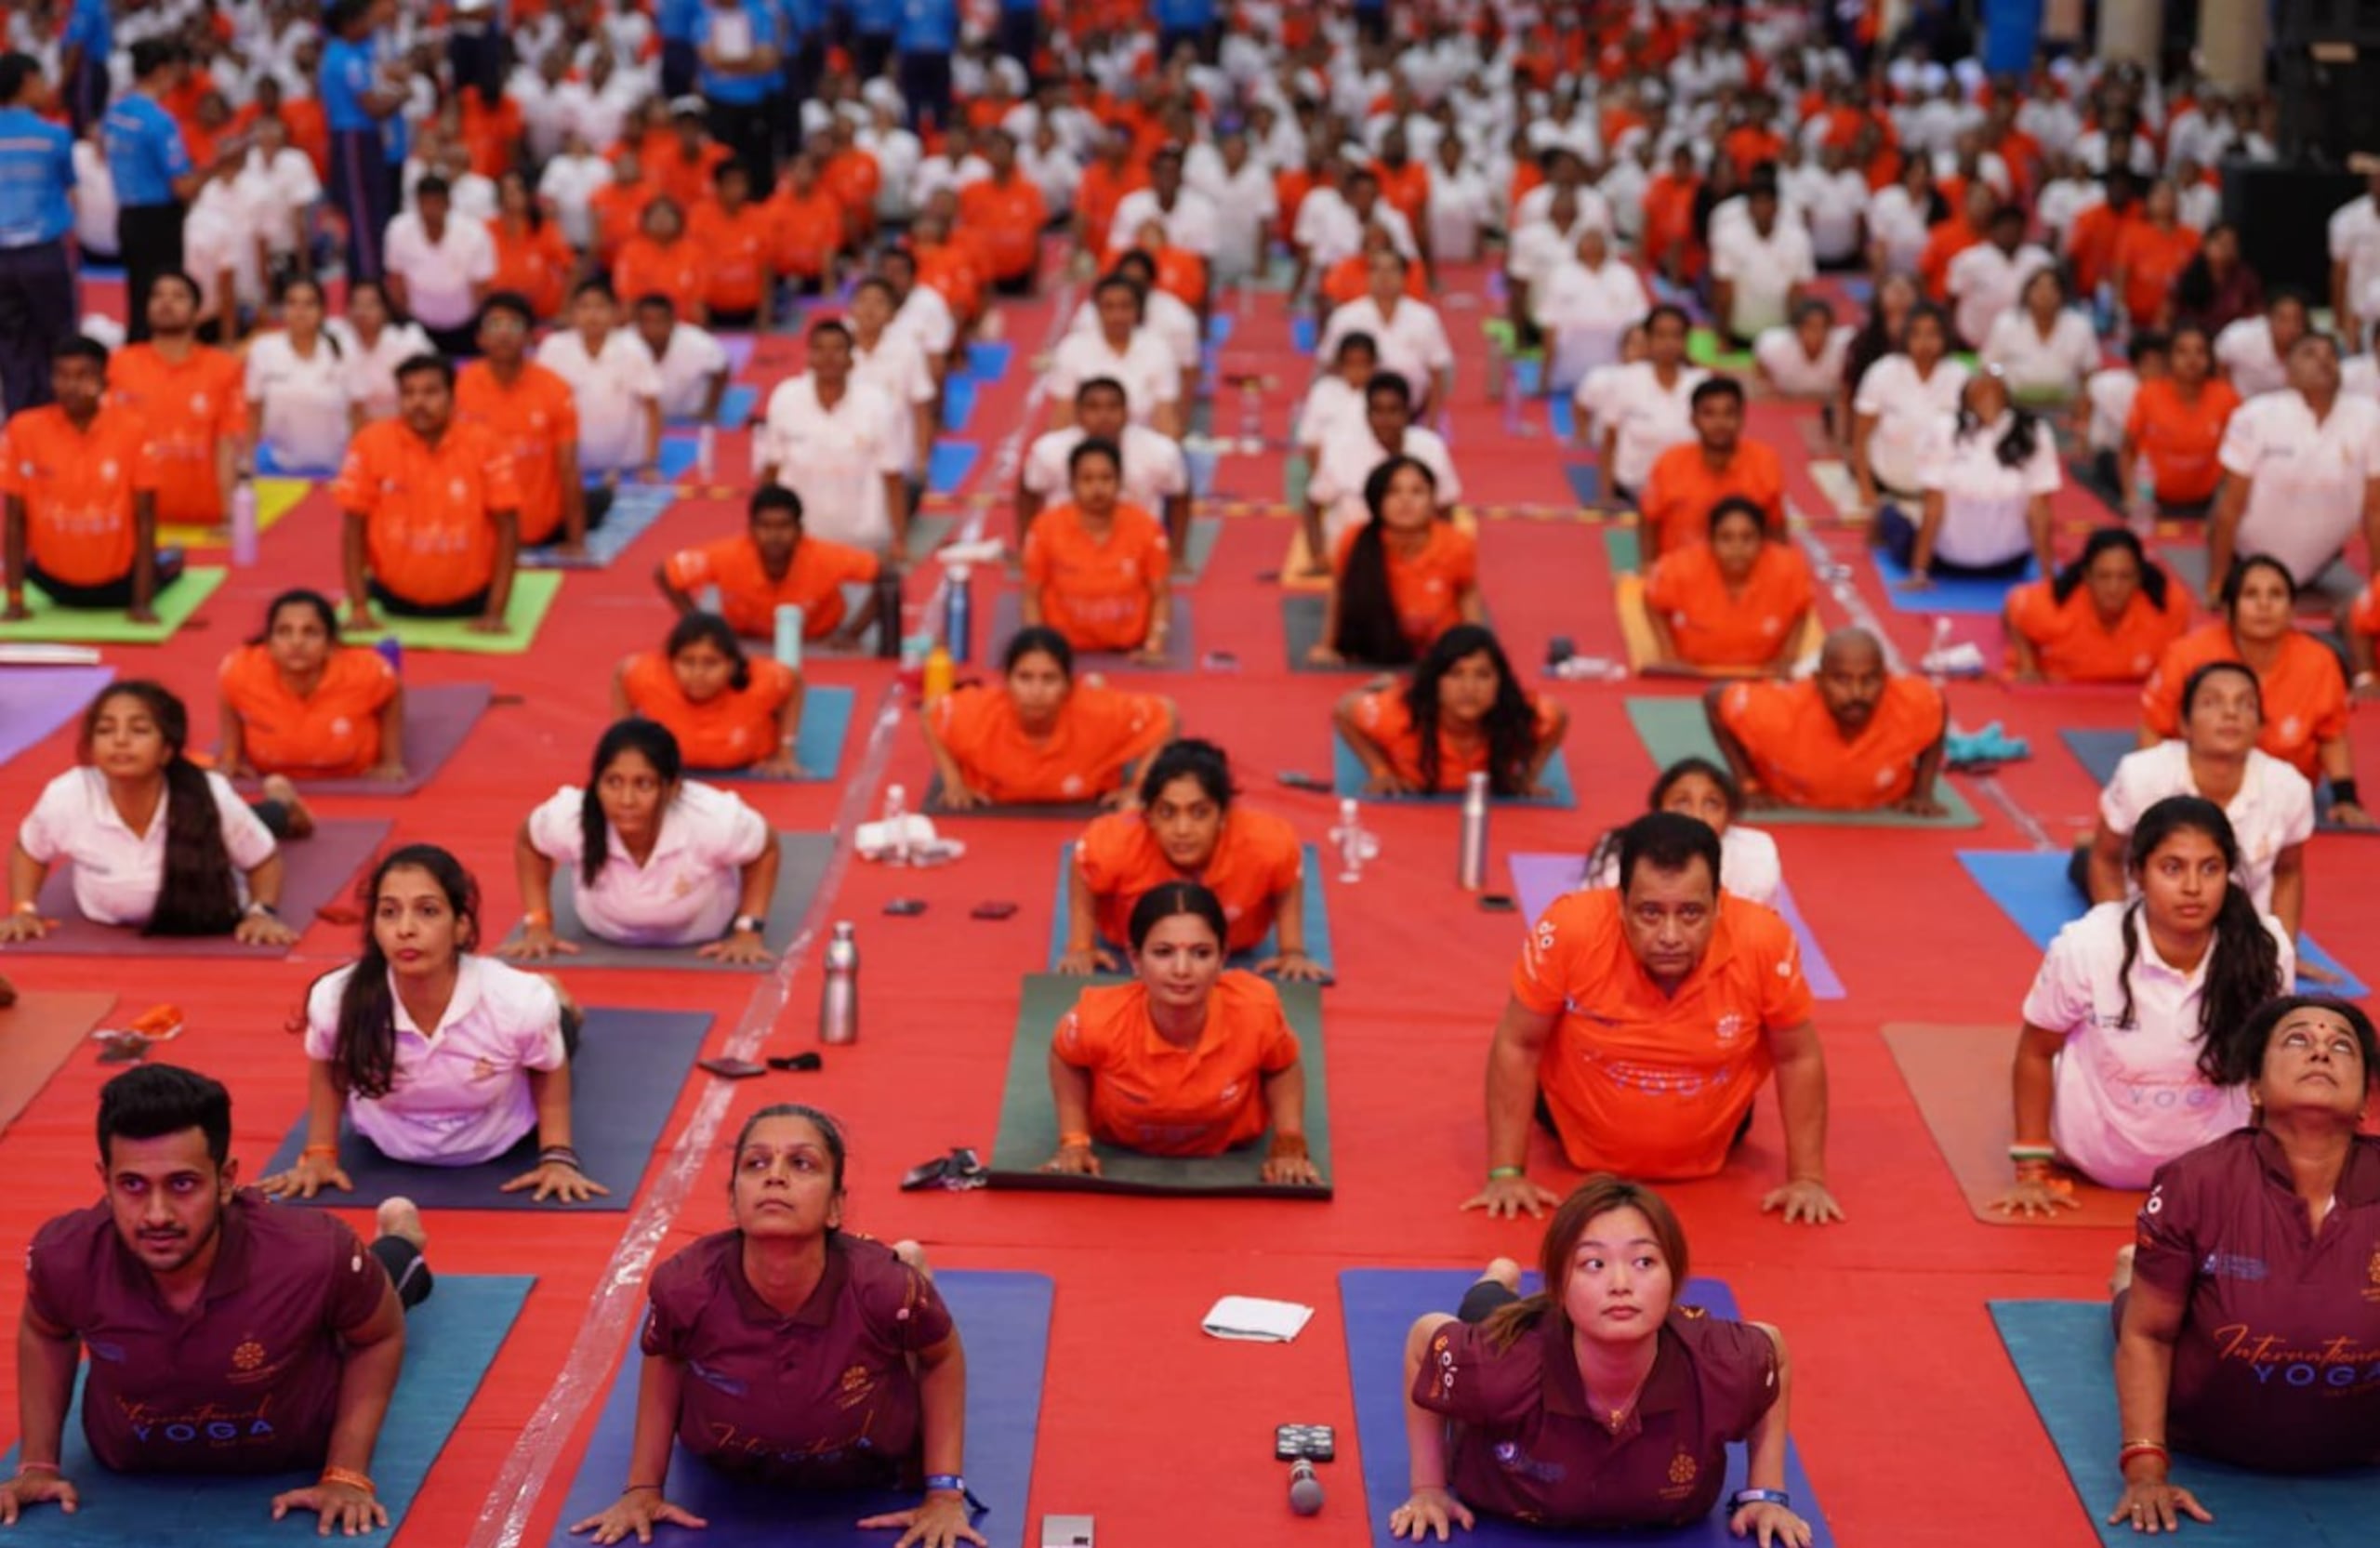 El evento sirvió para conmemorar el décimo Día Internacional del Yoga, que se celebra este 21 de junio y propició múltiples actos similares por toda la India.